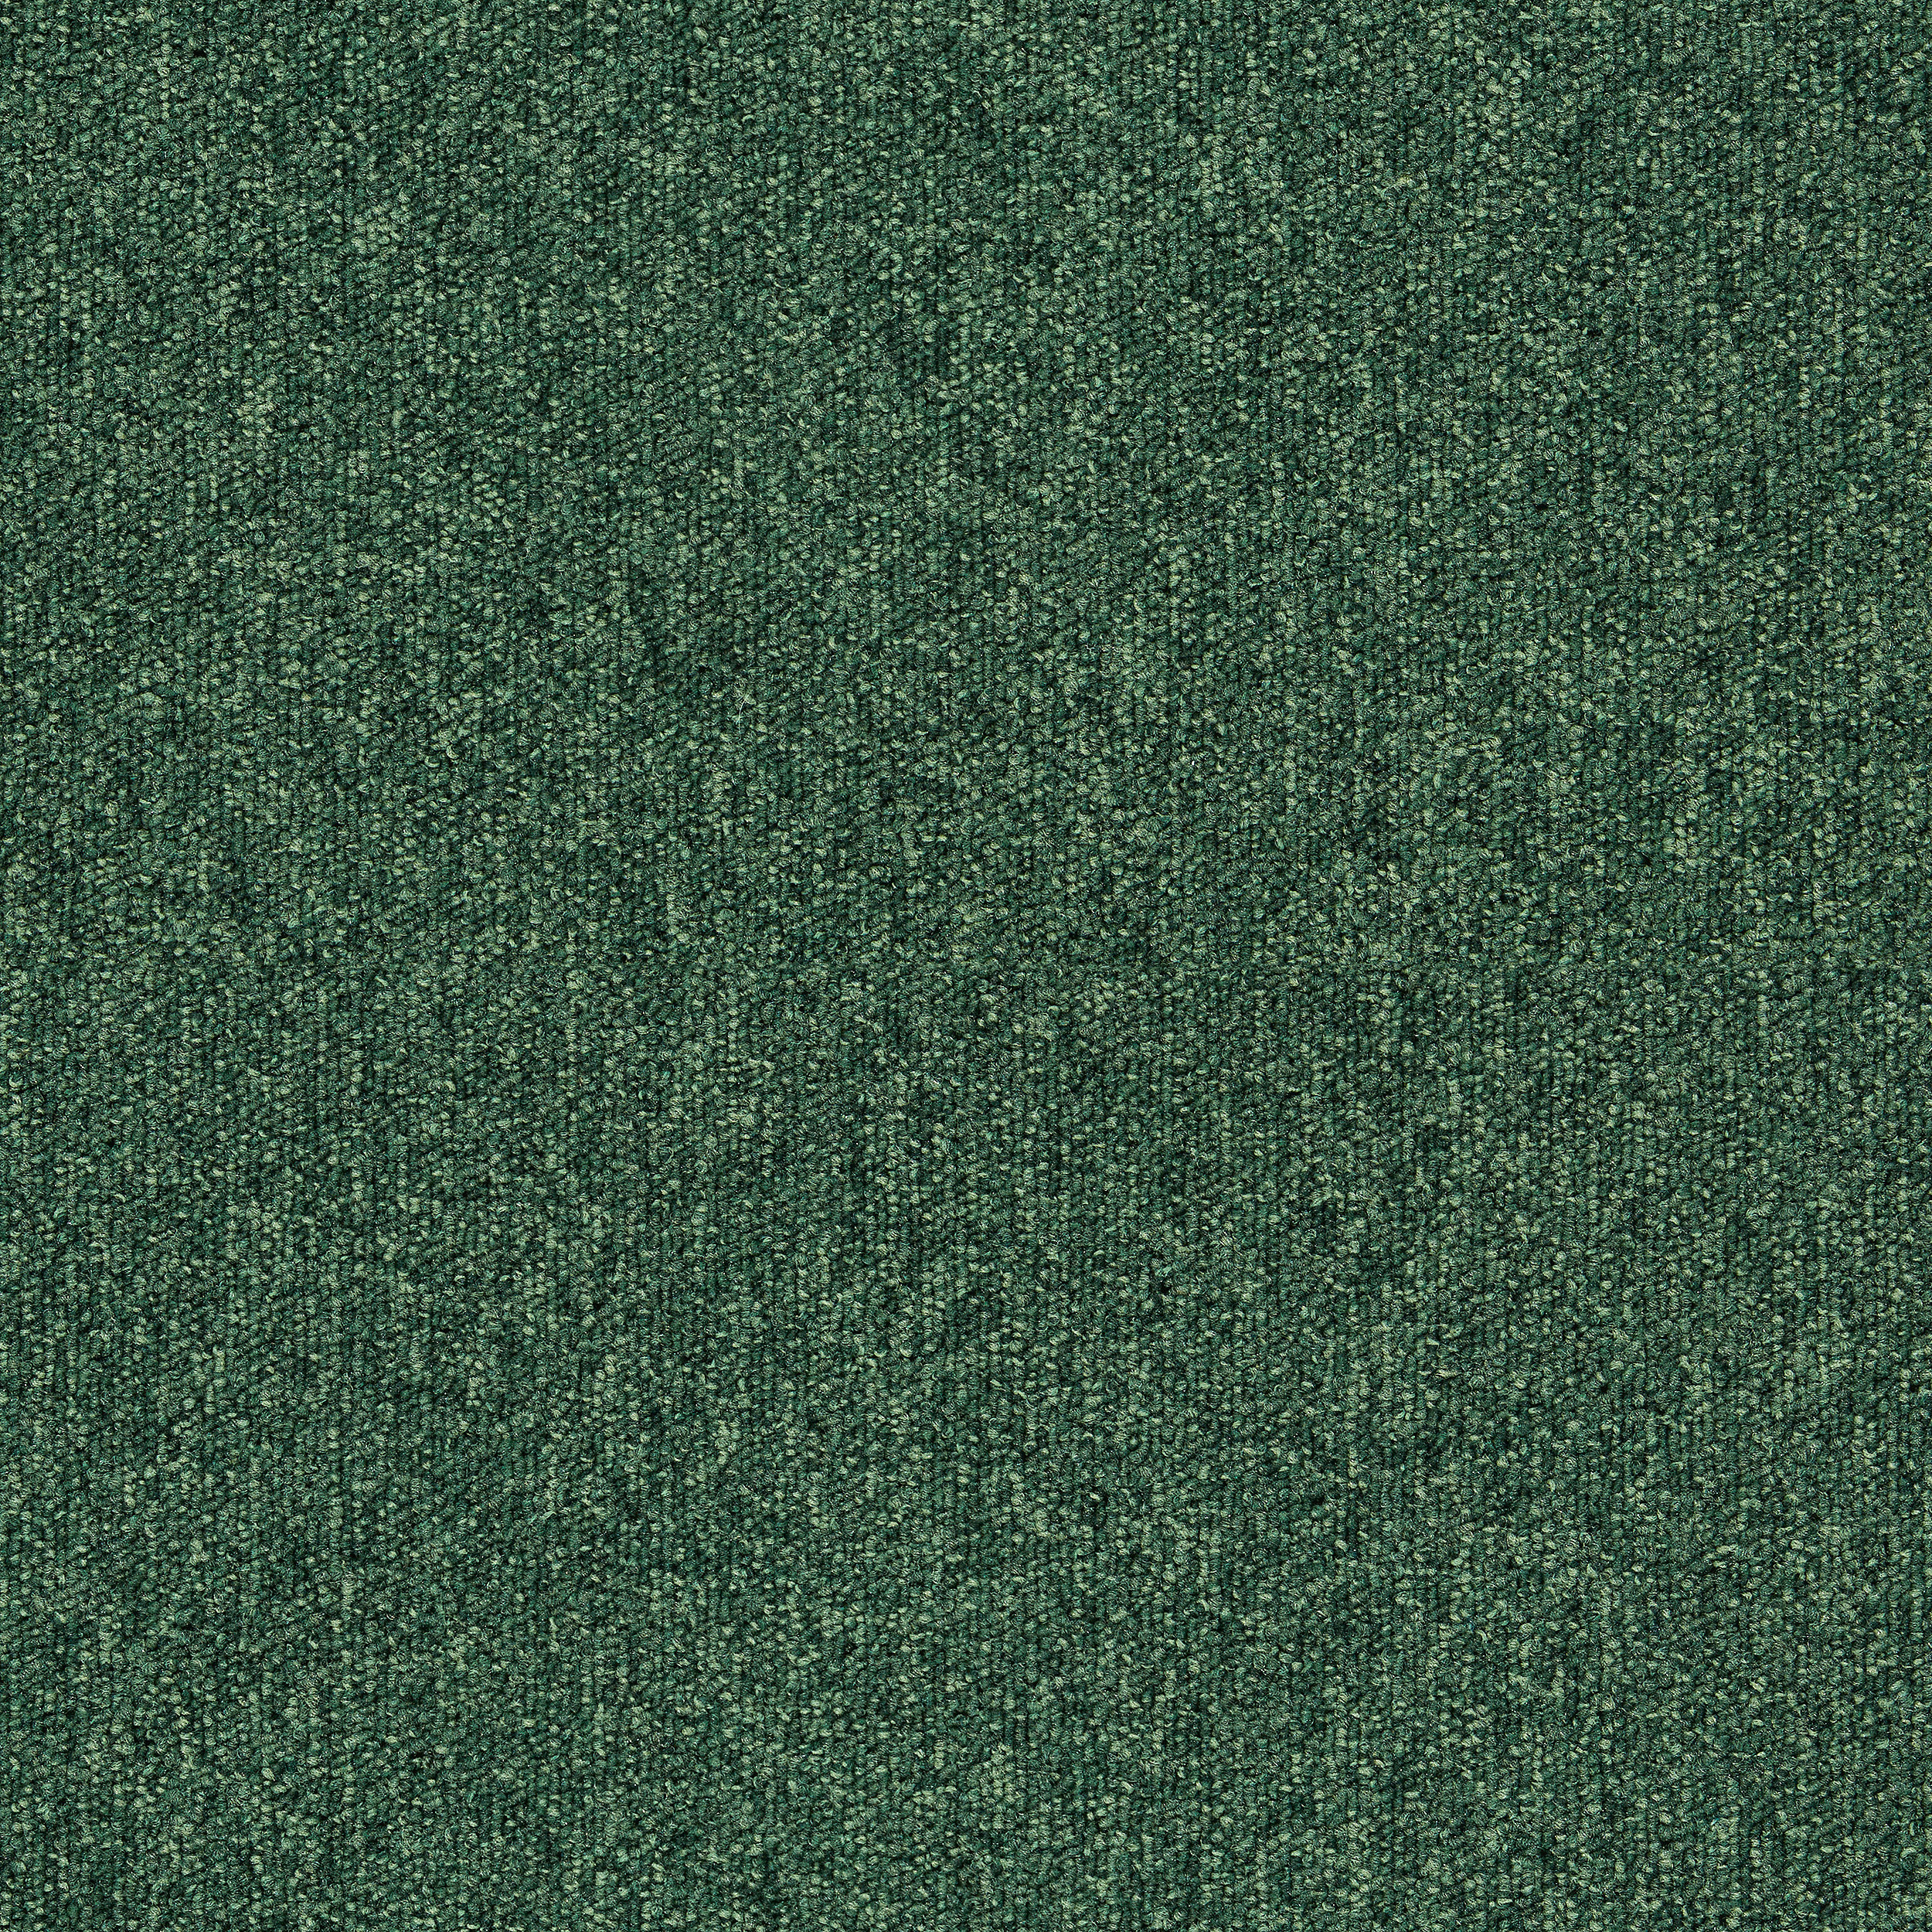 Heuga 727 Carpet Tile In Bottle Green afbeeldingnummer 18